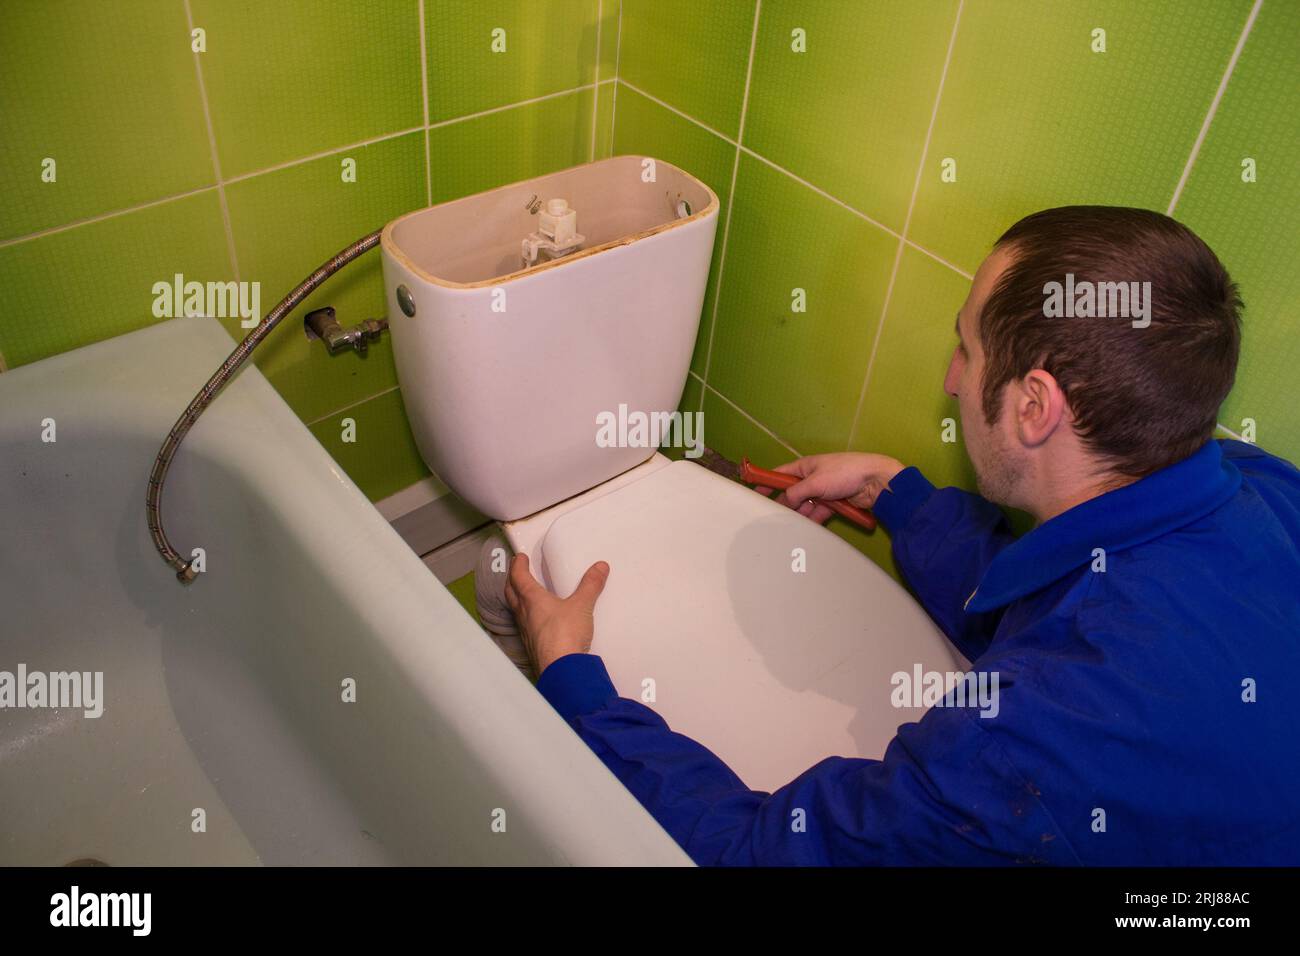 l'homme dévisse un réservoir de vidange d'une toilette Banque D'Images